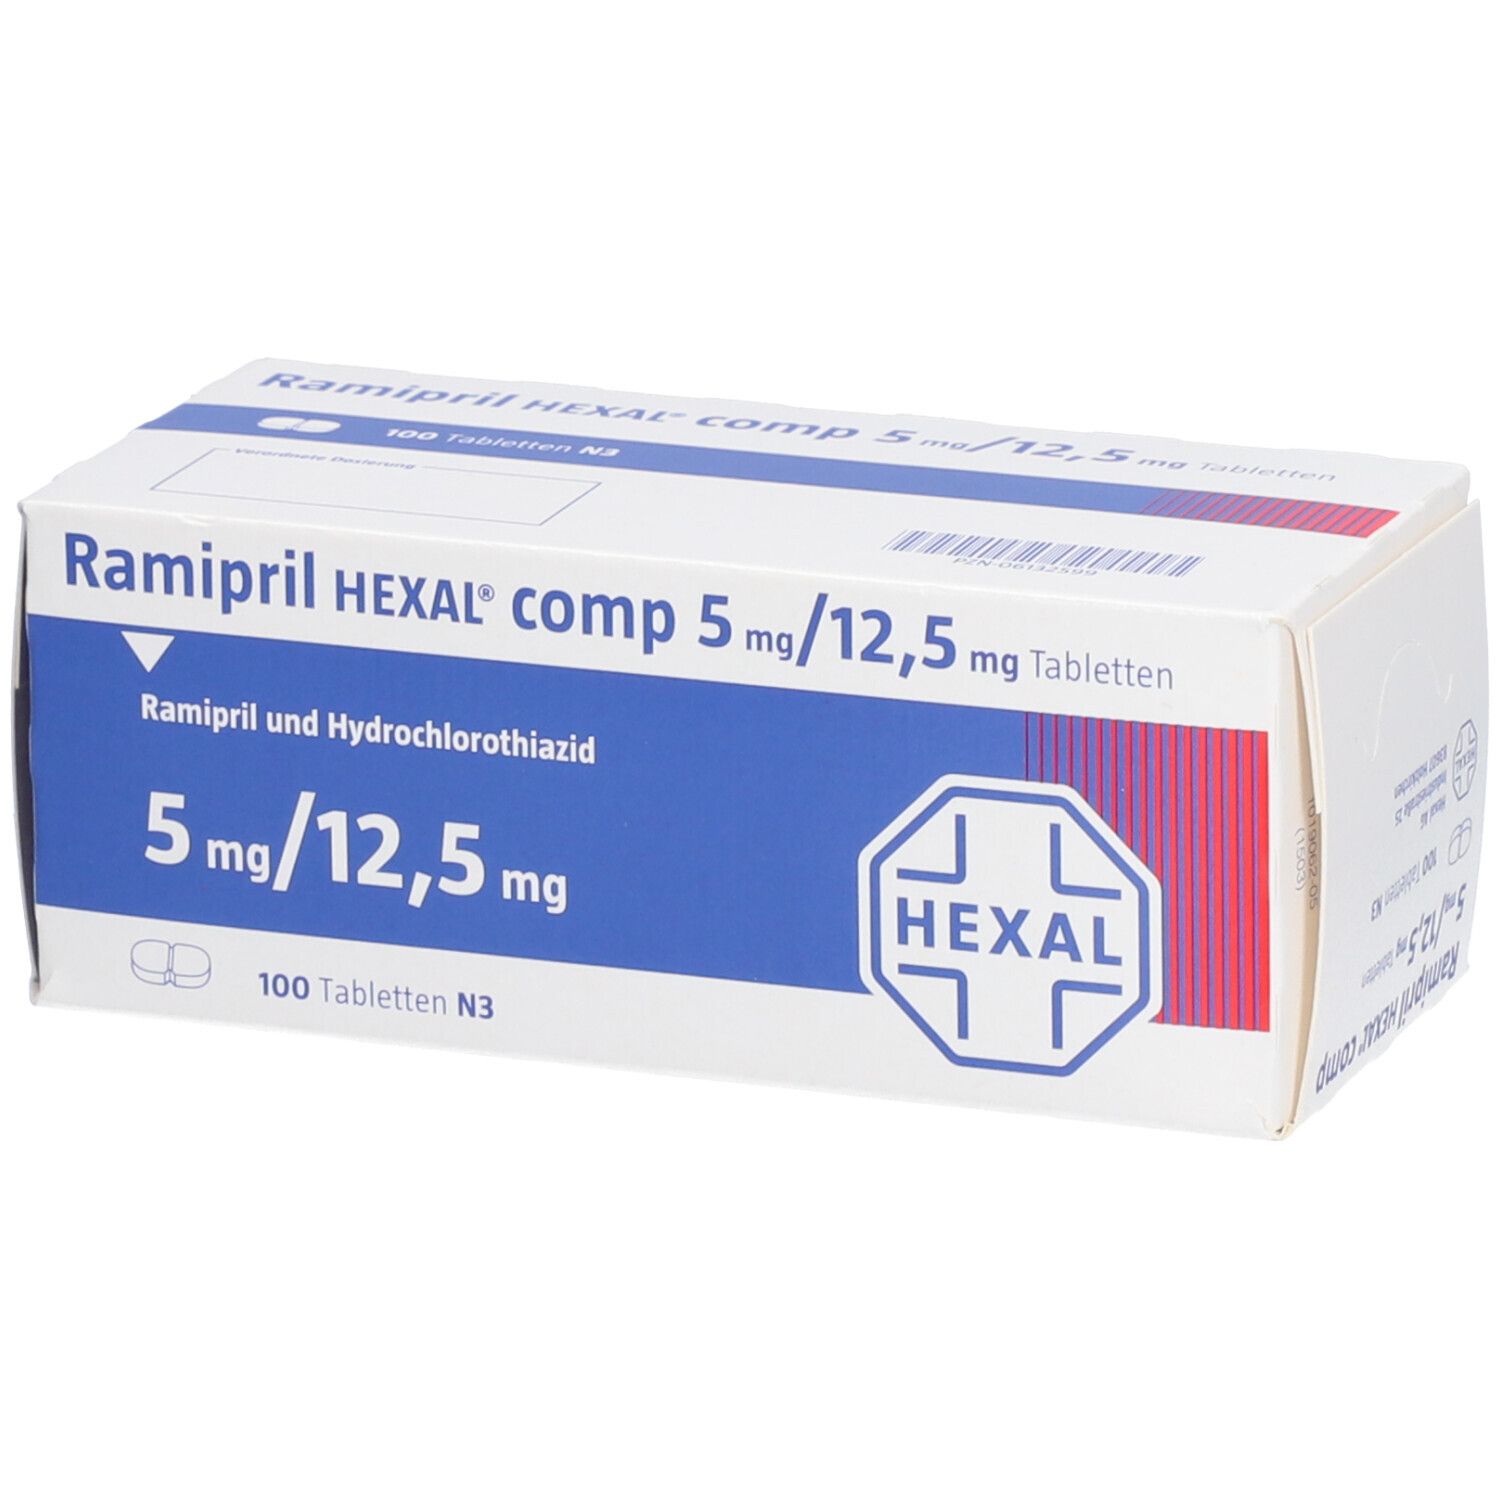 Ramipril HEXAL® comp 5 mg/12,5 mg